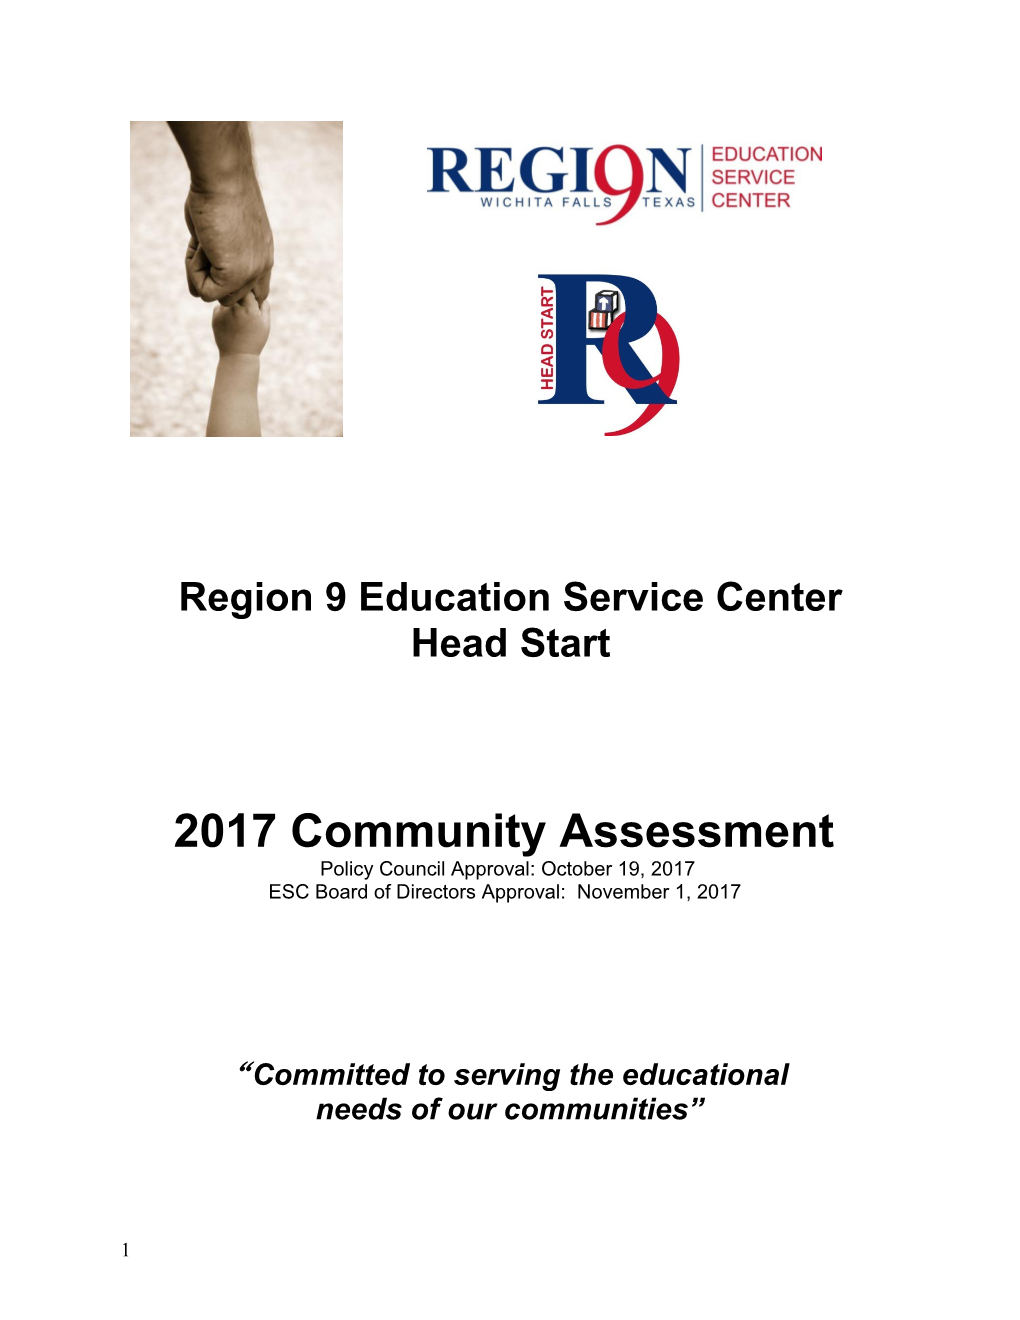 Region 9 Education Service Center Head Start